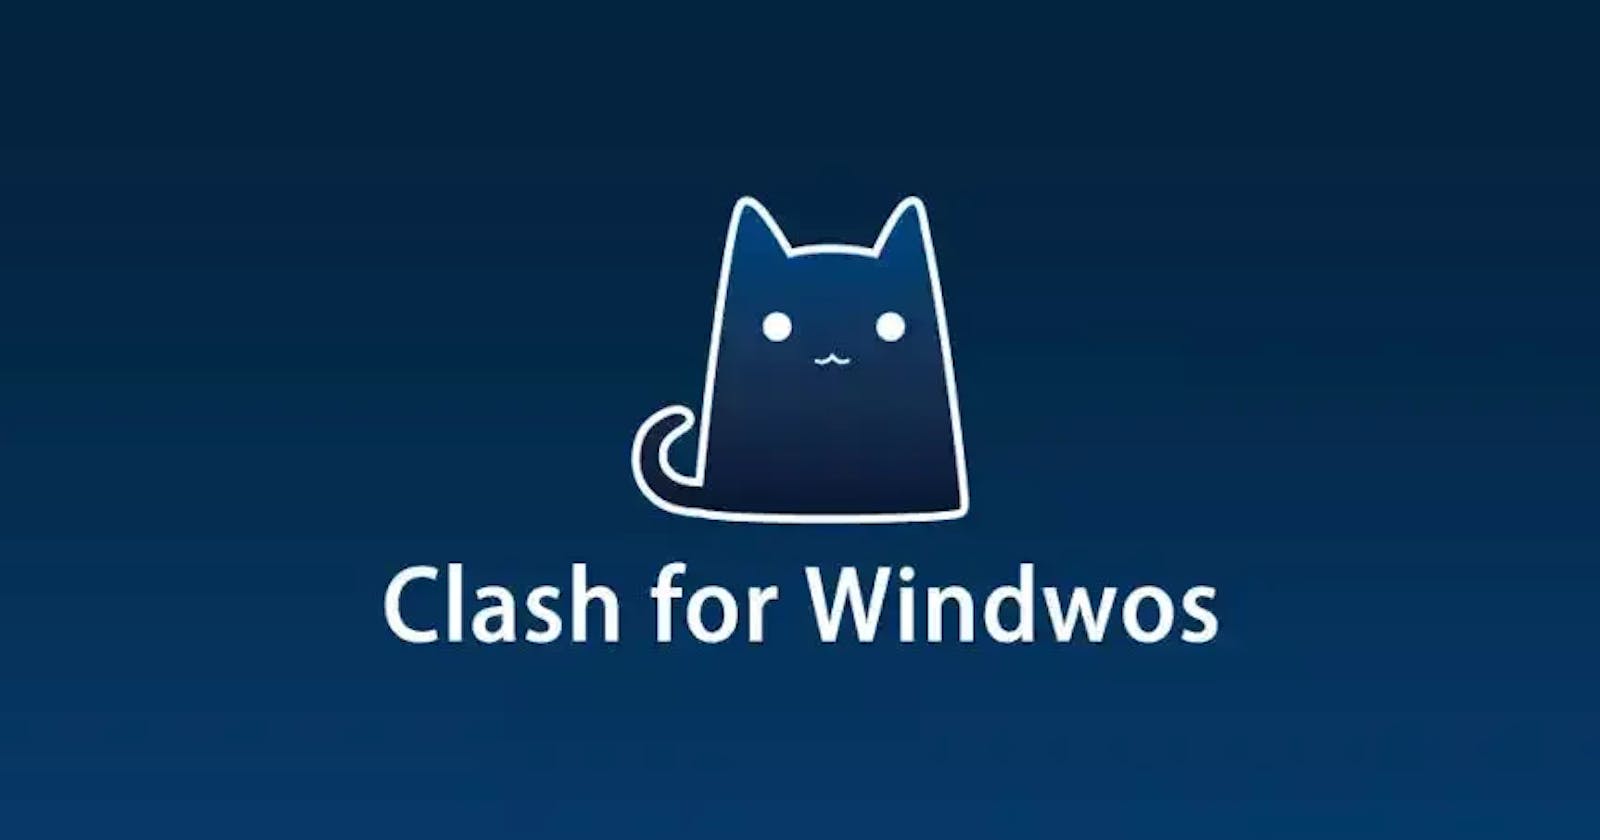 小猫咪 Clash Android 手机开启服务配置,做Windows流量服务